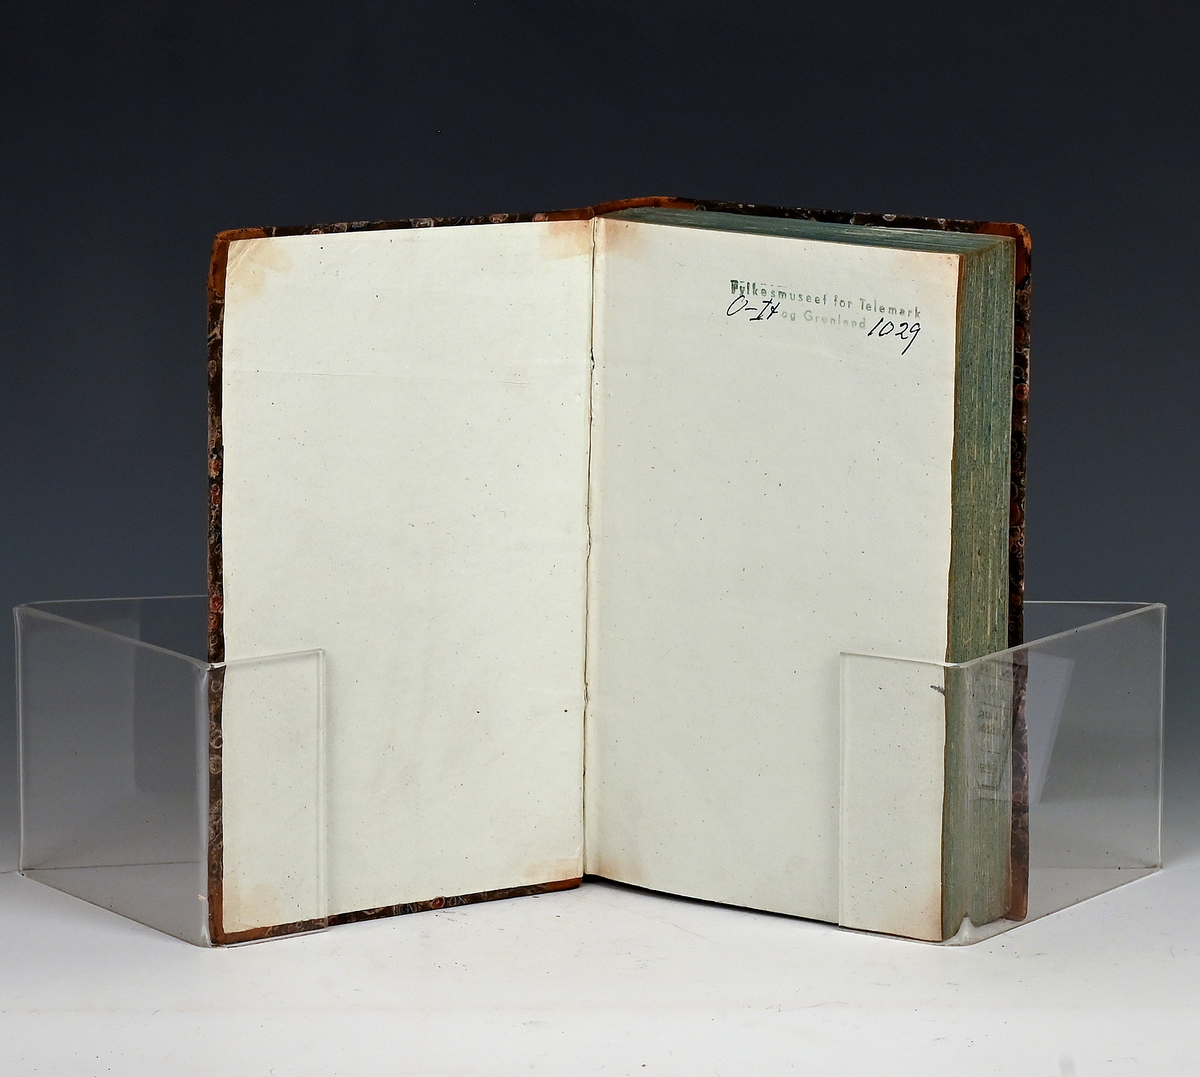 Maanedsskrift for litteratur. Femte bind. Kbhv. 1831.